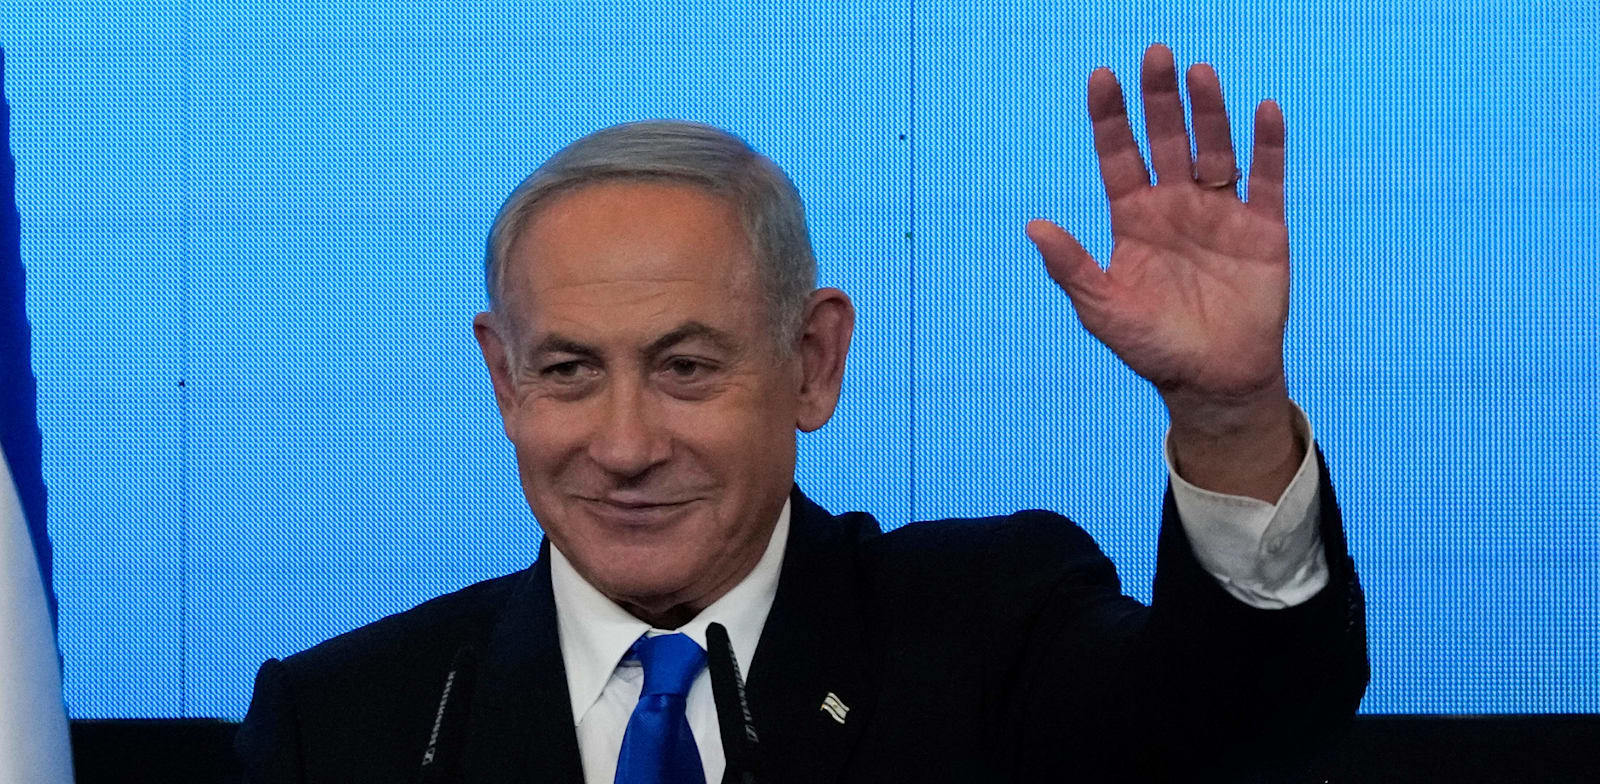 בנימין נתניהו במהלך נאומו במטה המפלגה בירושלים, אמש / צילום: Associated Press, Maya Alleruzzo